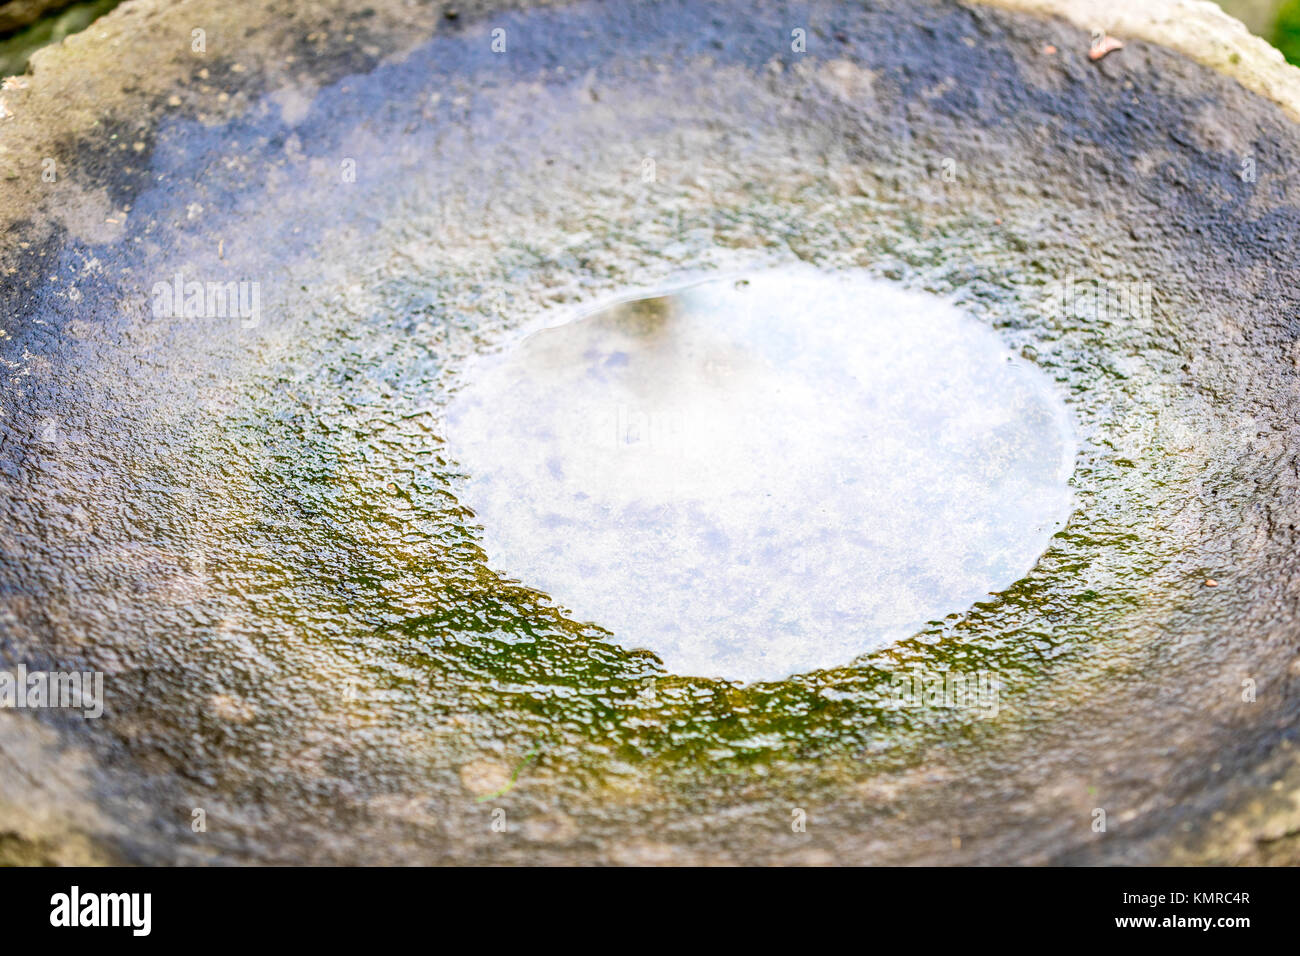 residual water in a stone bird bath Stock Photo